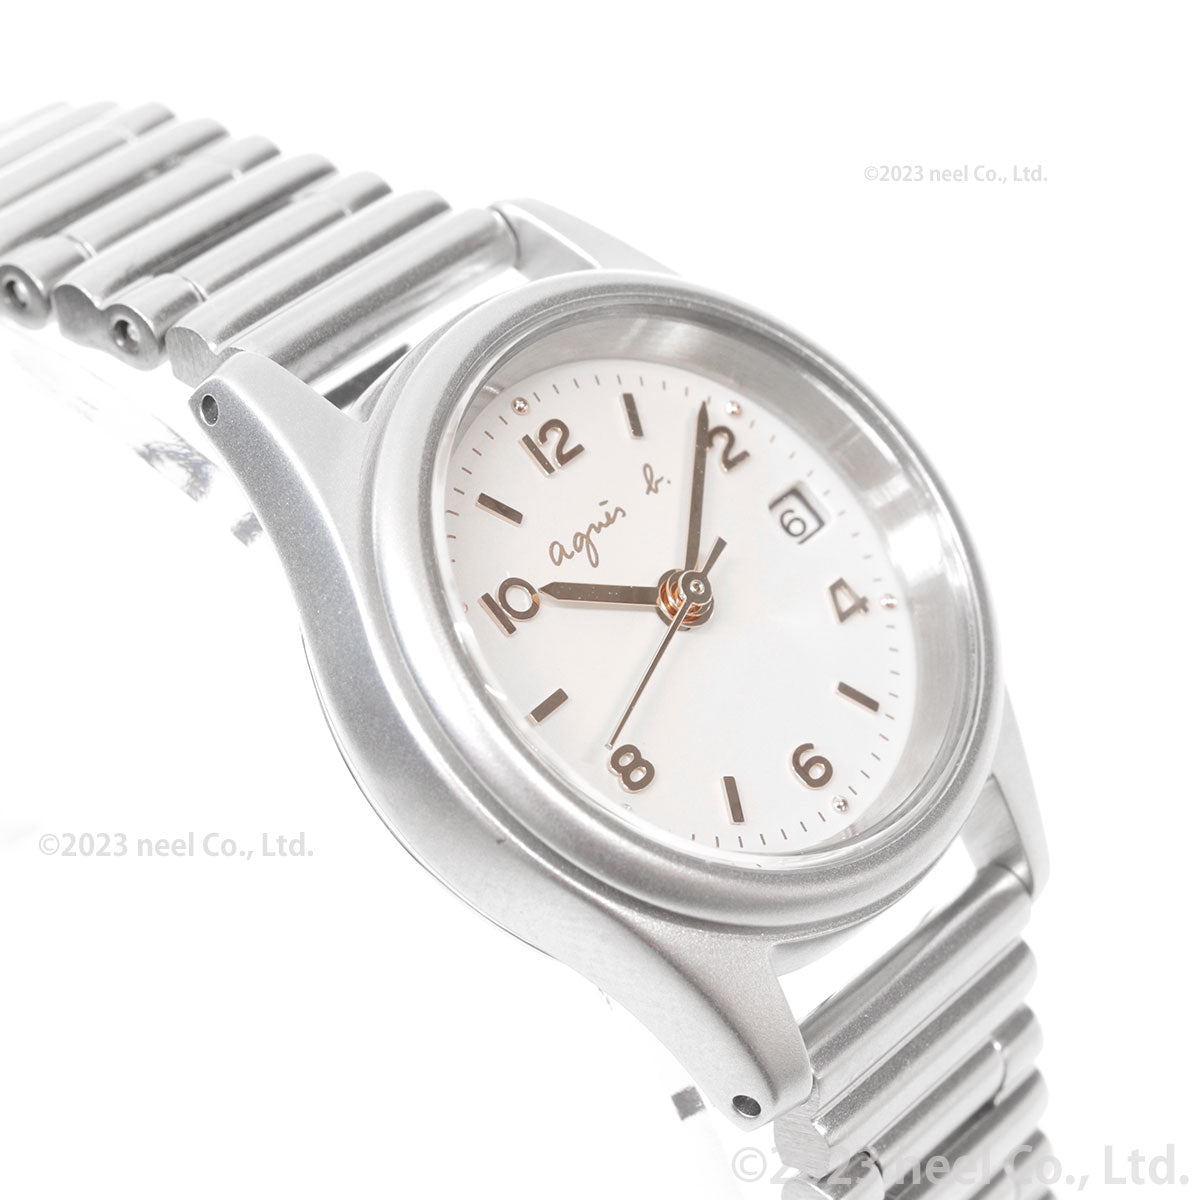 アニエスベー 時計 レディース 限定モデル 腕時計 agnes b. FCSD705